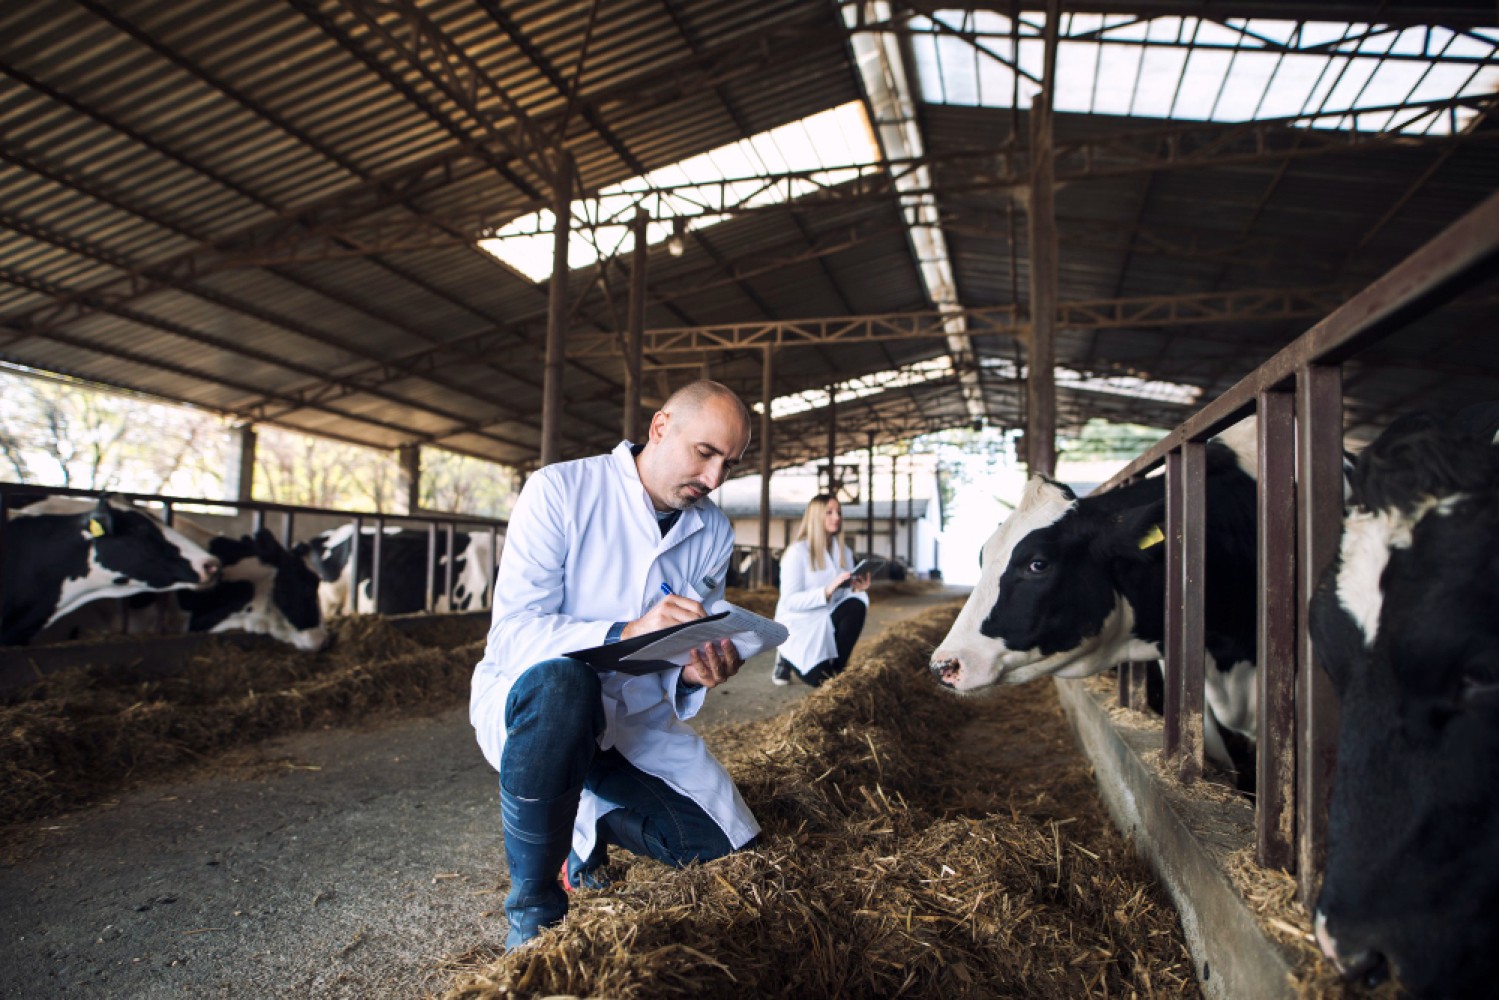 В данной статье мы рассмотрим особенности содержания коров в цехах раздоя и производства молока в России, а также расскажем о последних тенденциях и проблемах, стоящих перед отраслью.